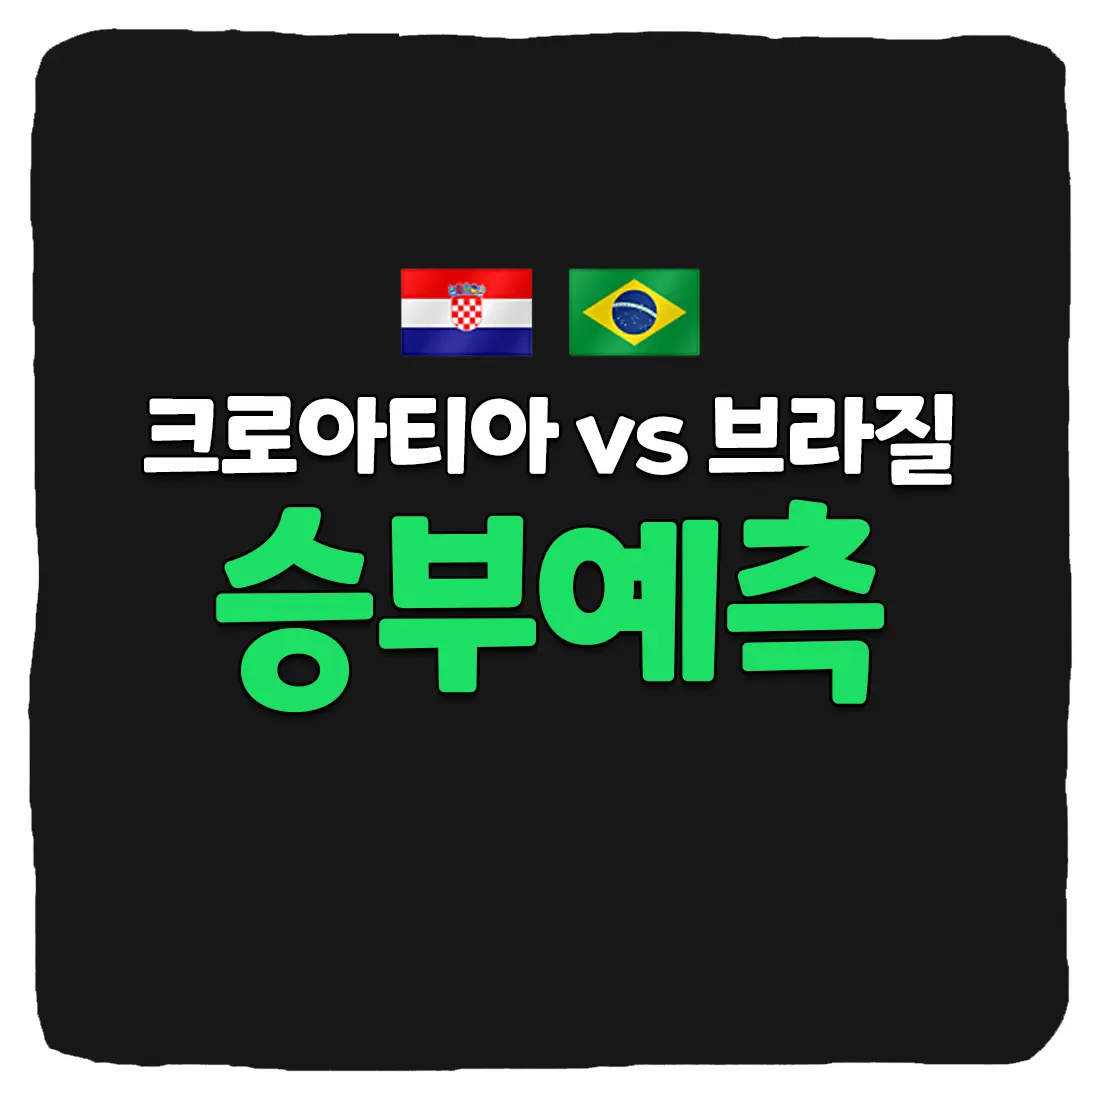 크로아티아 vs 브라질 축구 상대 전적 및 승부 예측 분석